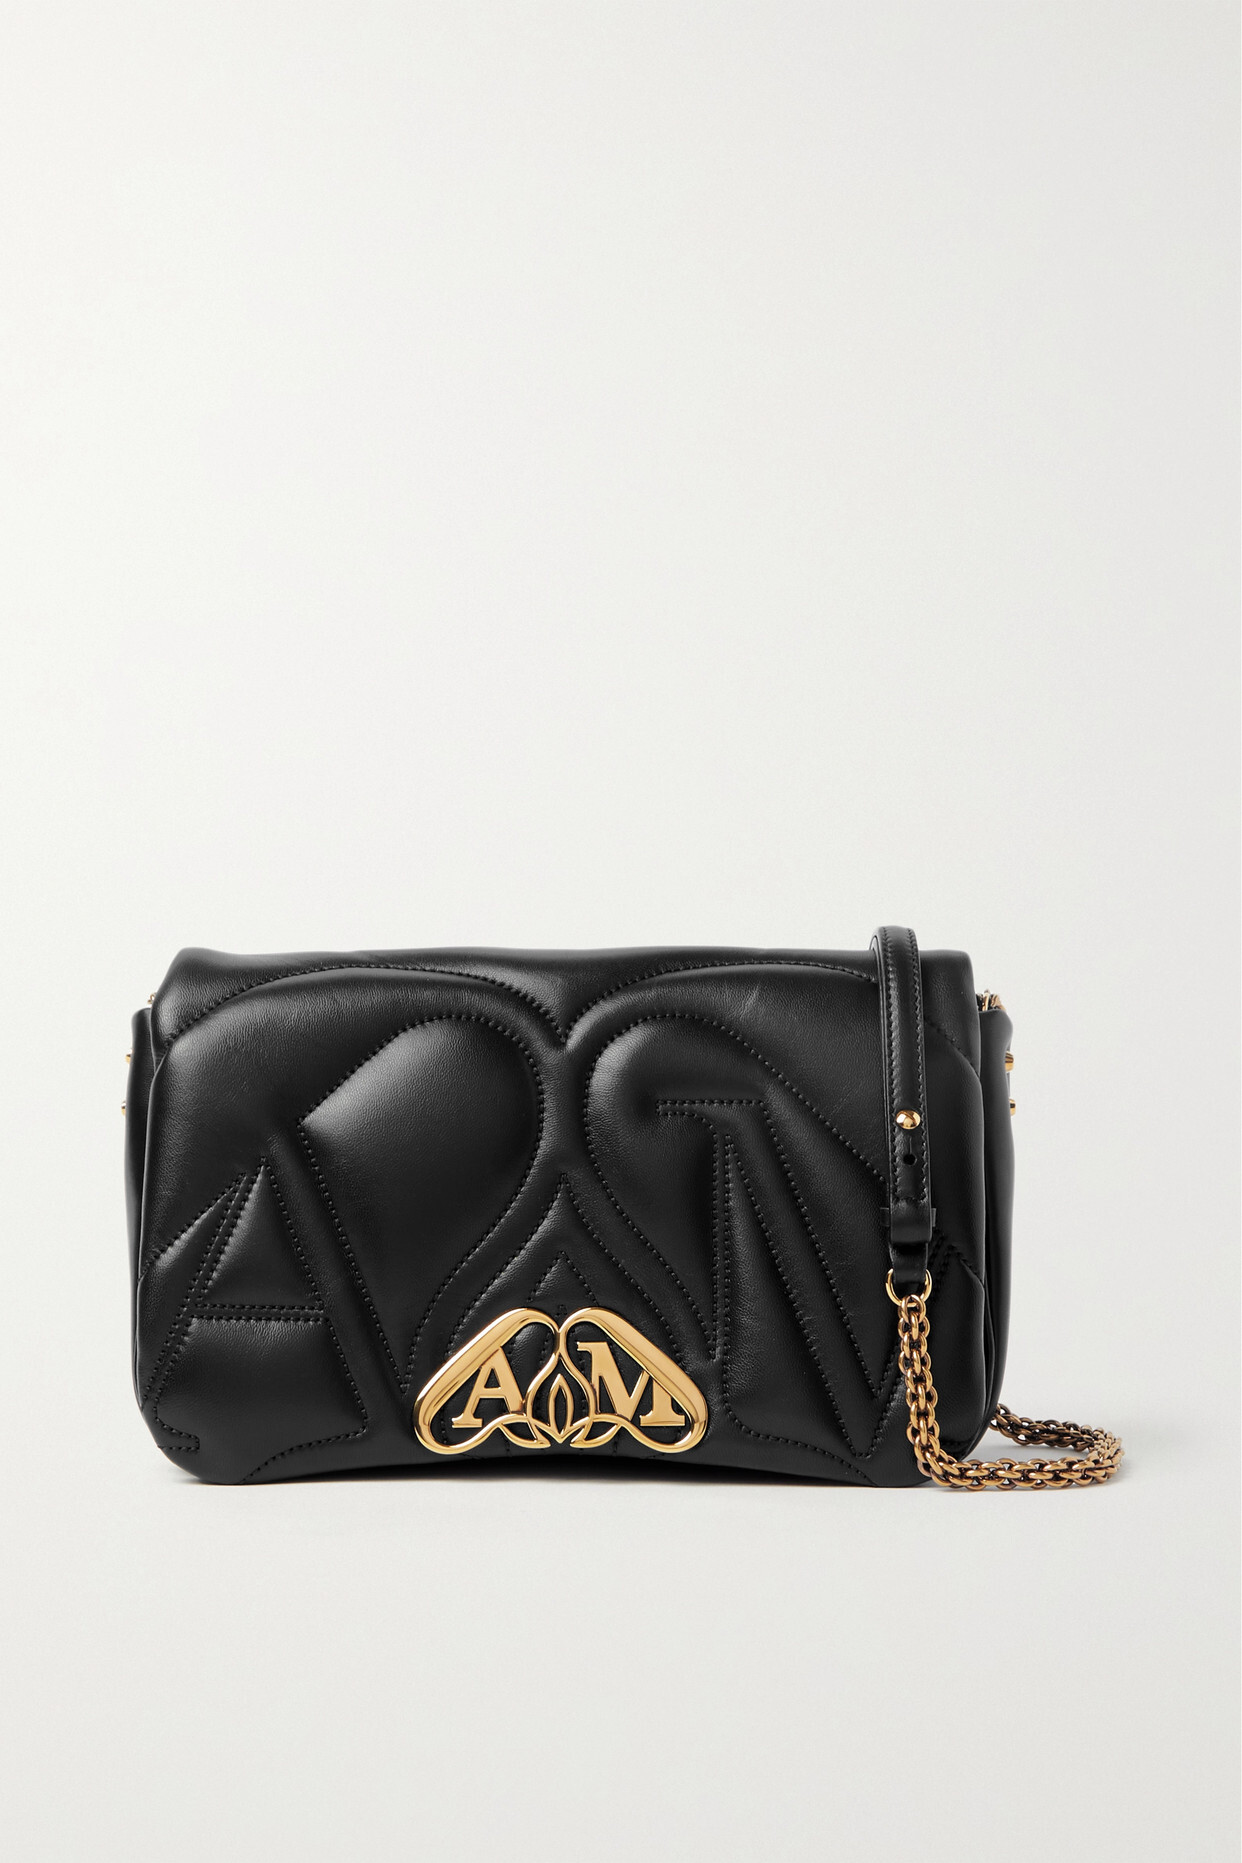 Alexander McQueen - Exploded Seal Embellished Quilted Leather Shoulder Bag - Black